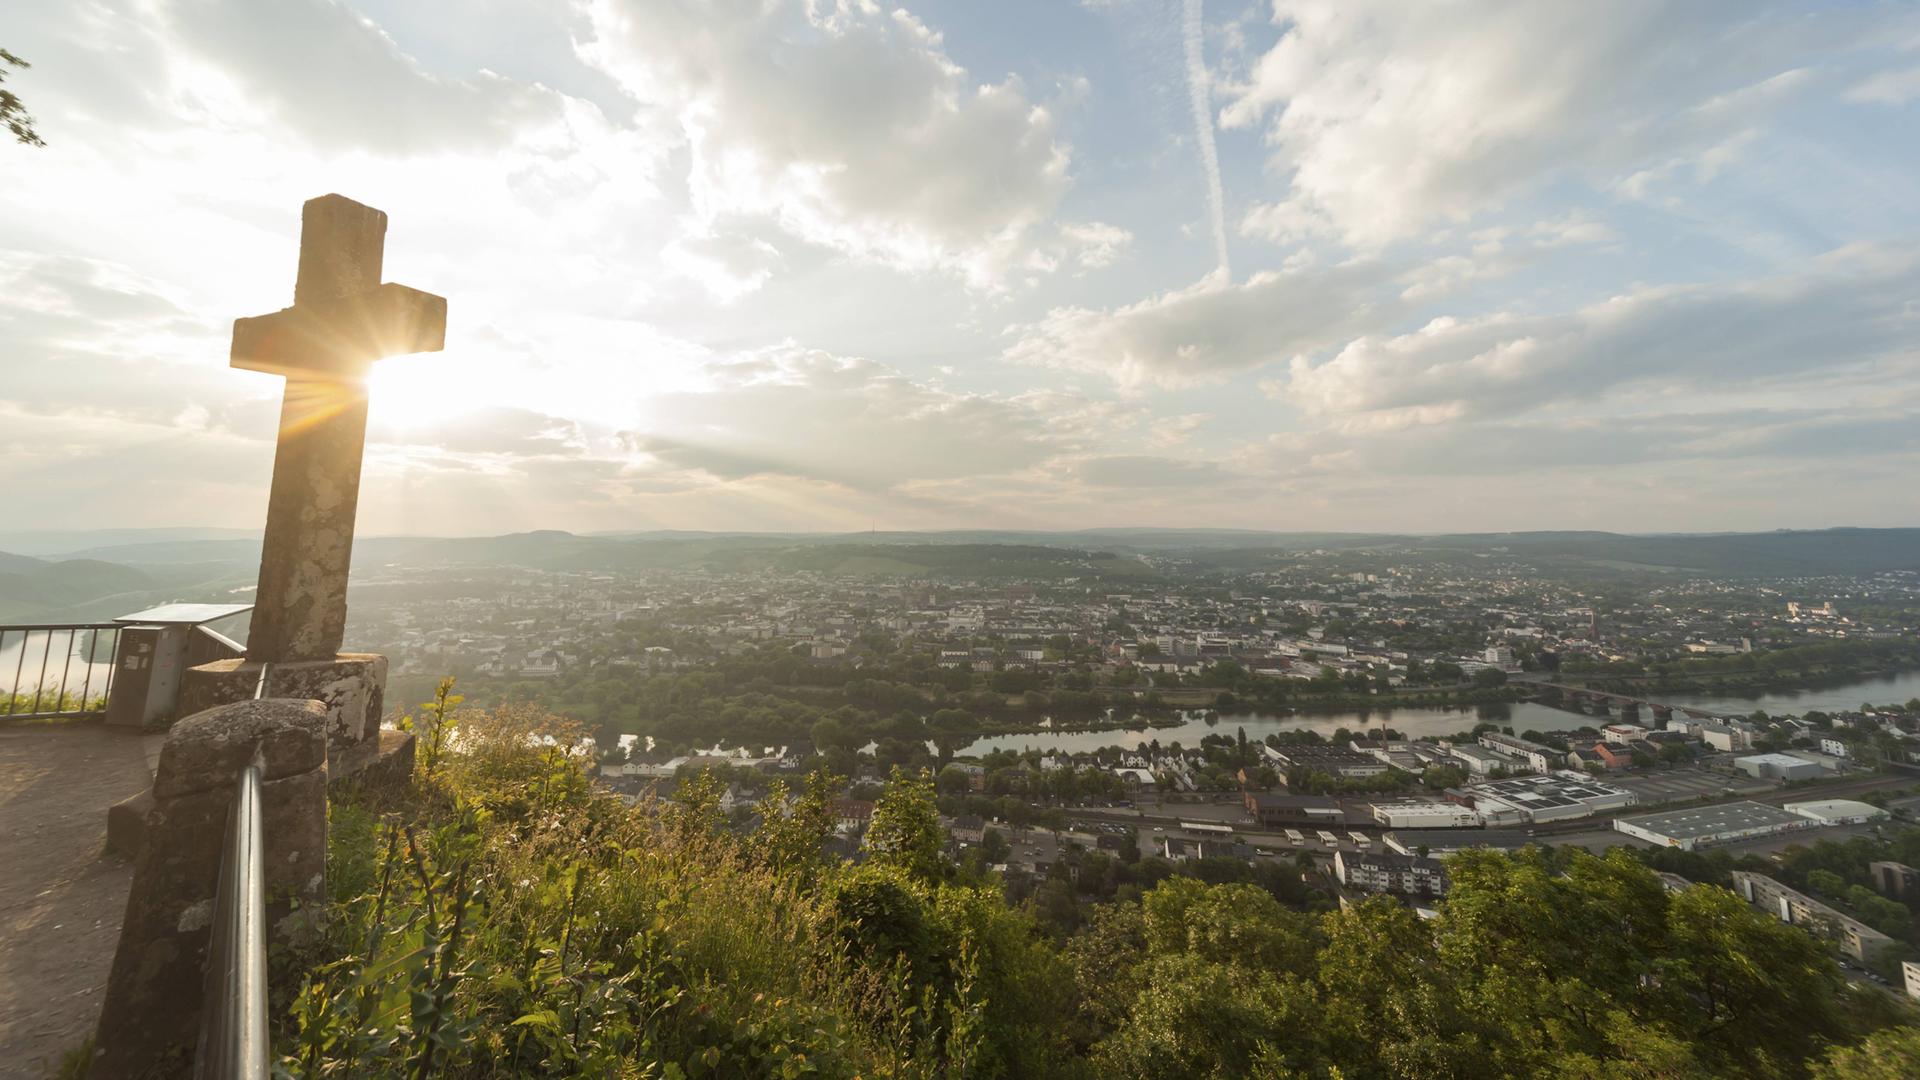 Blick vom Markusberg auf die Stadt Trier an der Mosel im Sonnenlicht